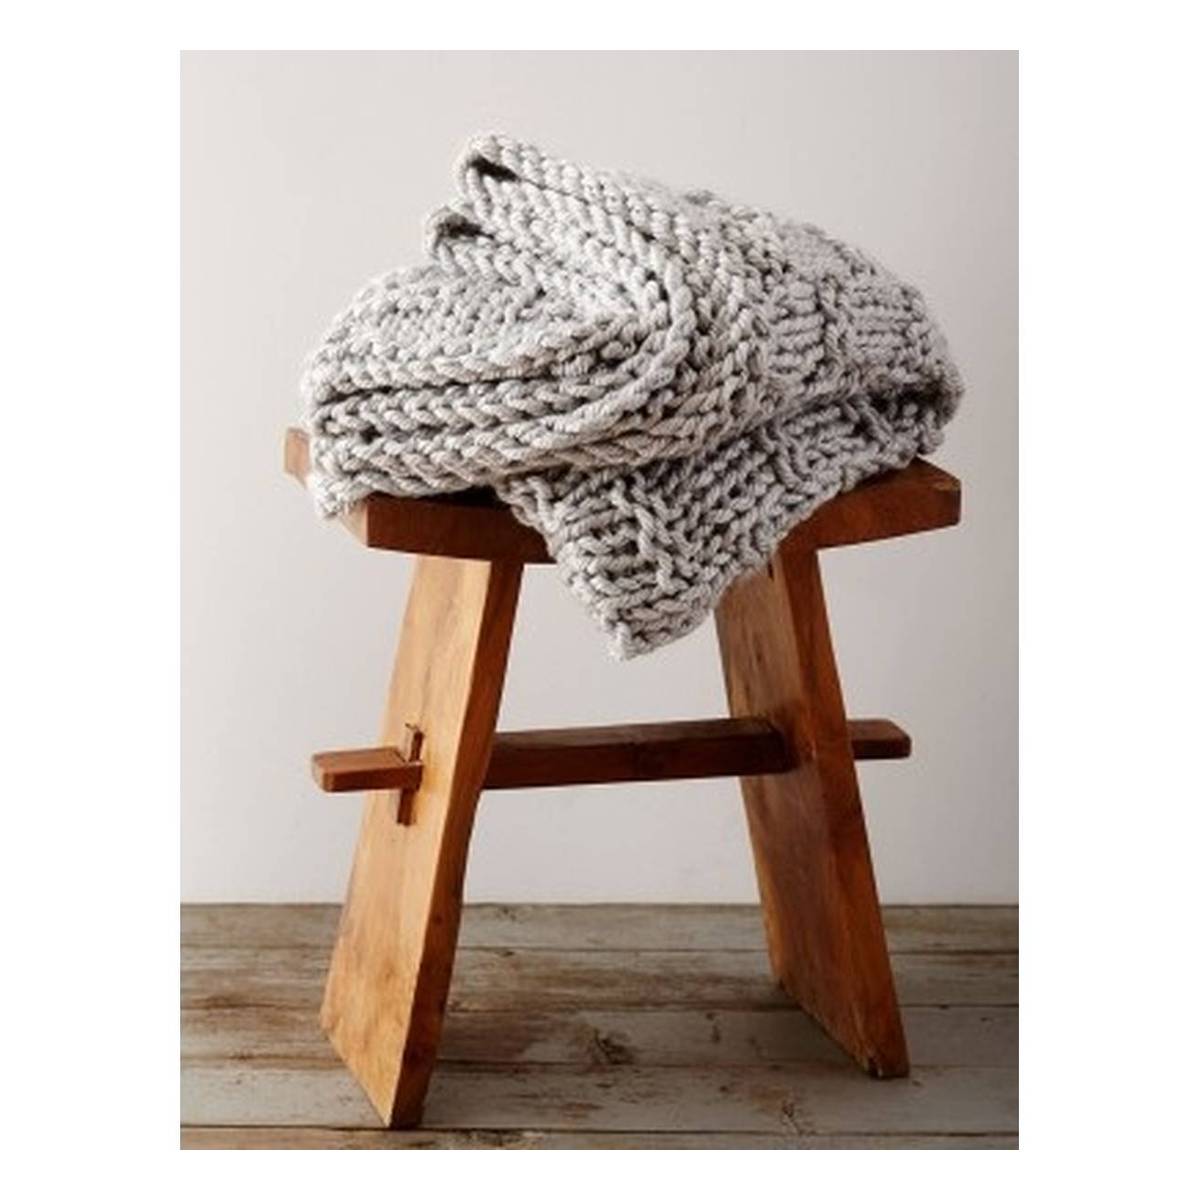 Bernat Woven Look Knit Blanket Pattern